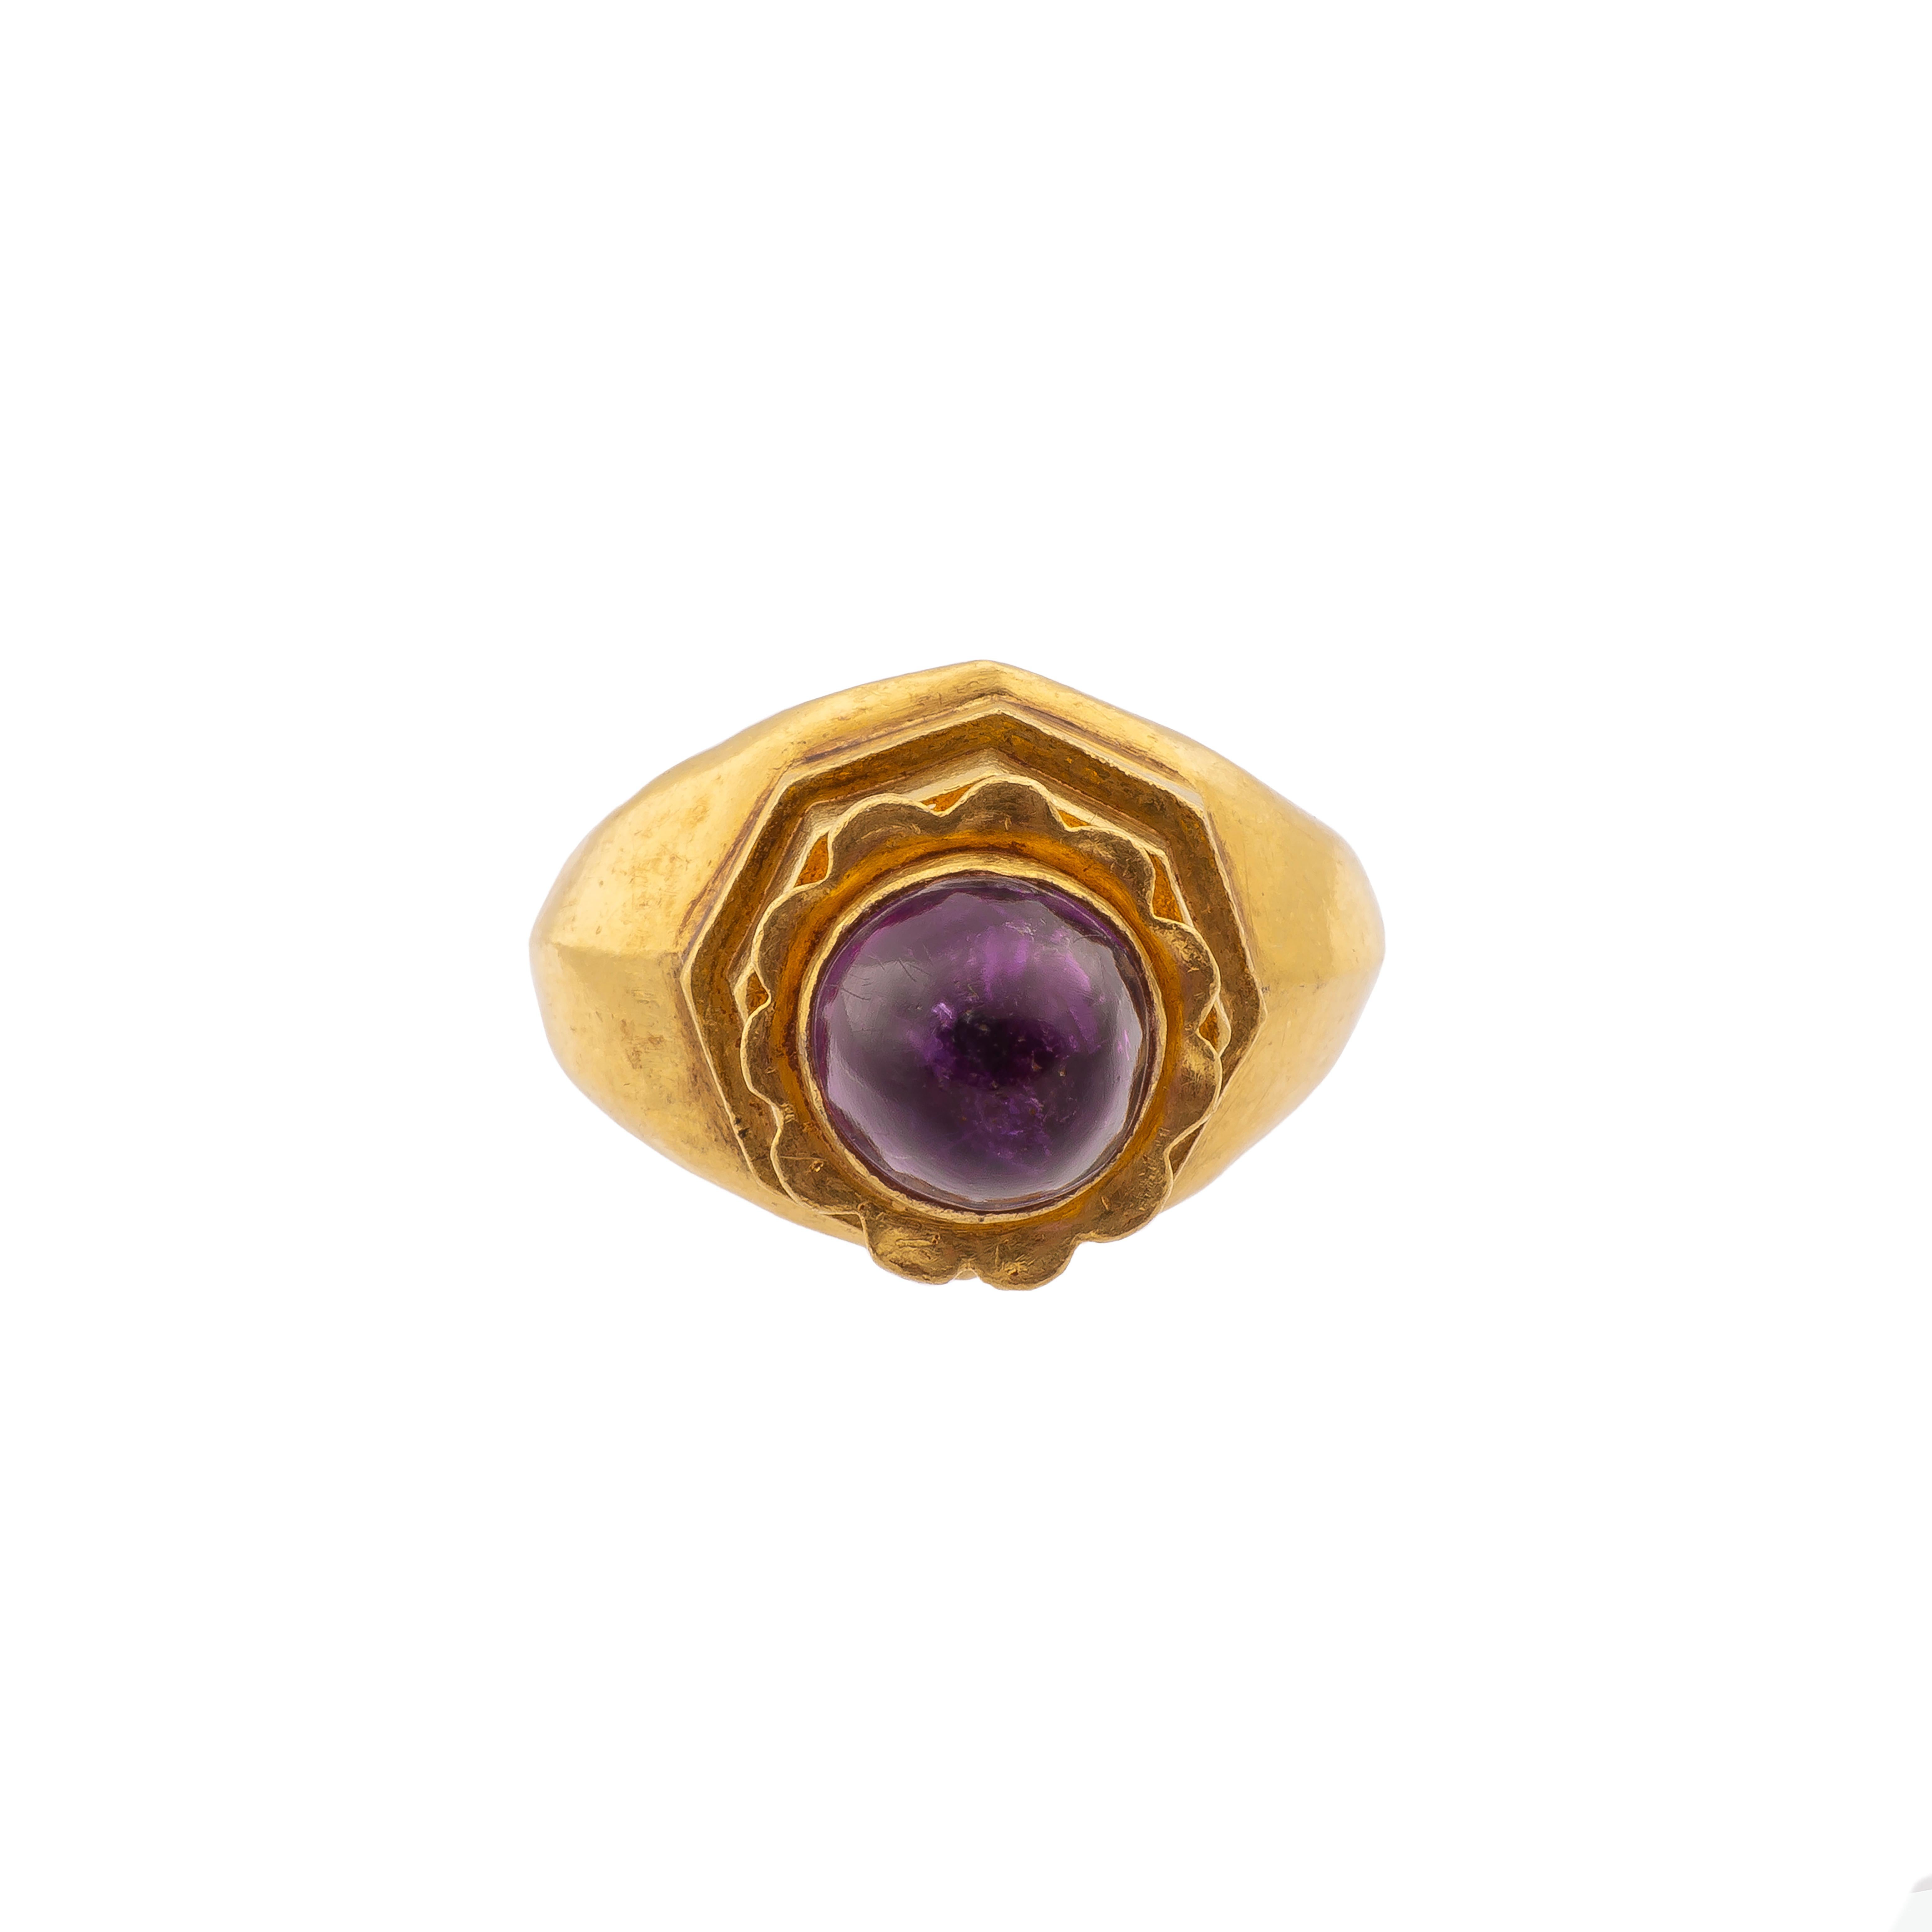 Cabochon Byzantine Gemstone Ring with Amethyst